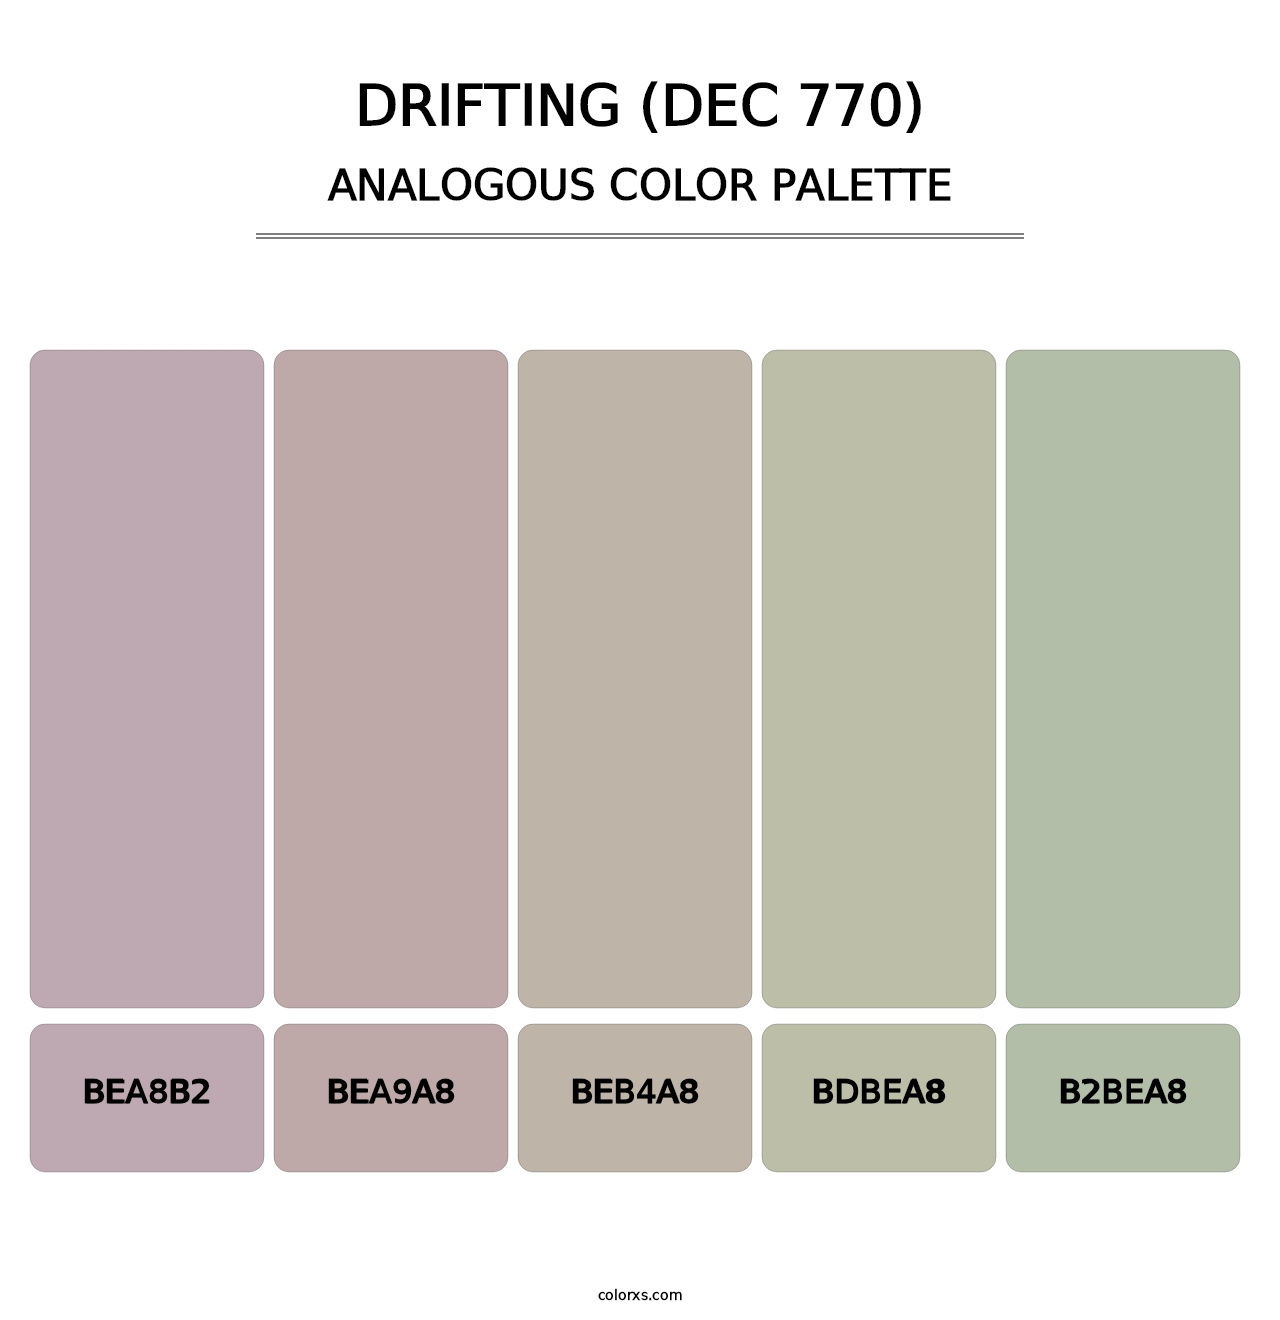 Drifting (DEC 770) - Analogous Color Palette